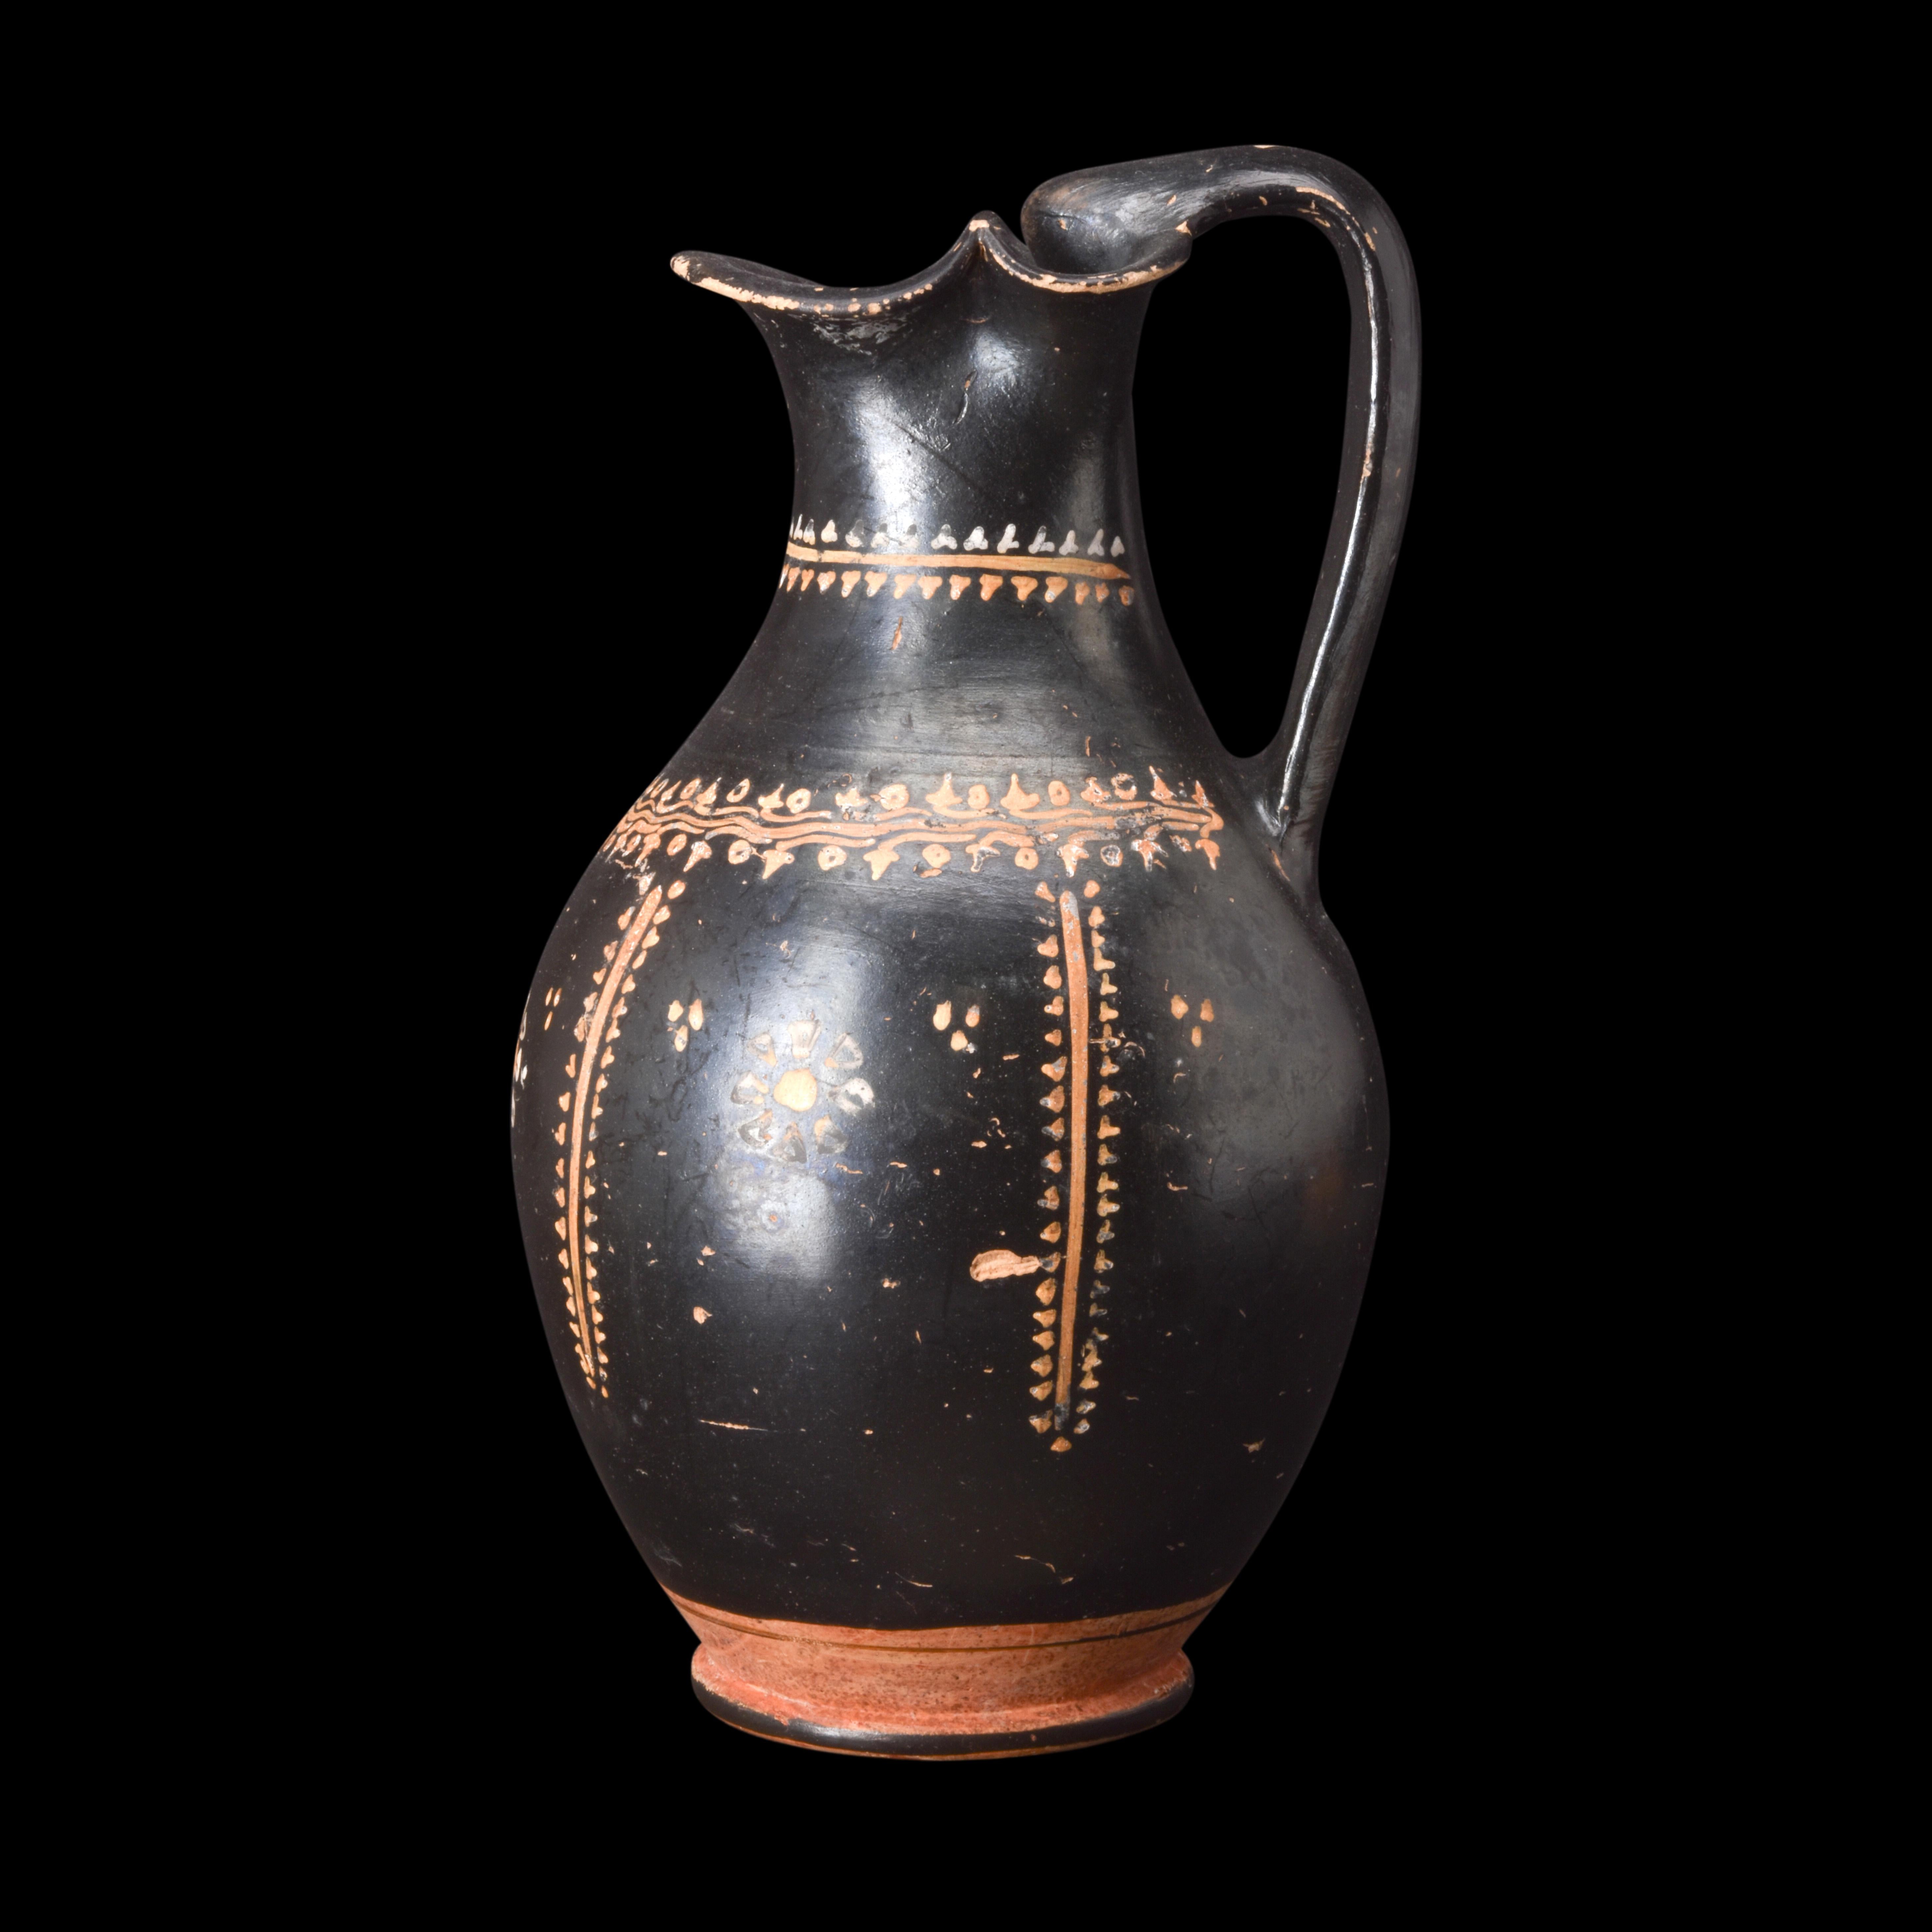 Une oinochoe en poterie à glaçure noire qui présente des caractéristiques propres à ce type spécifique de poterie grecque. Le corps du récipient est arrondi et présente de délicates cannelures qui s'affinent gracieusement vers le pied. Le col du